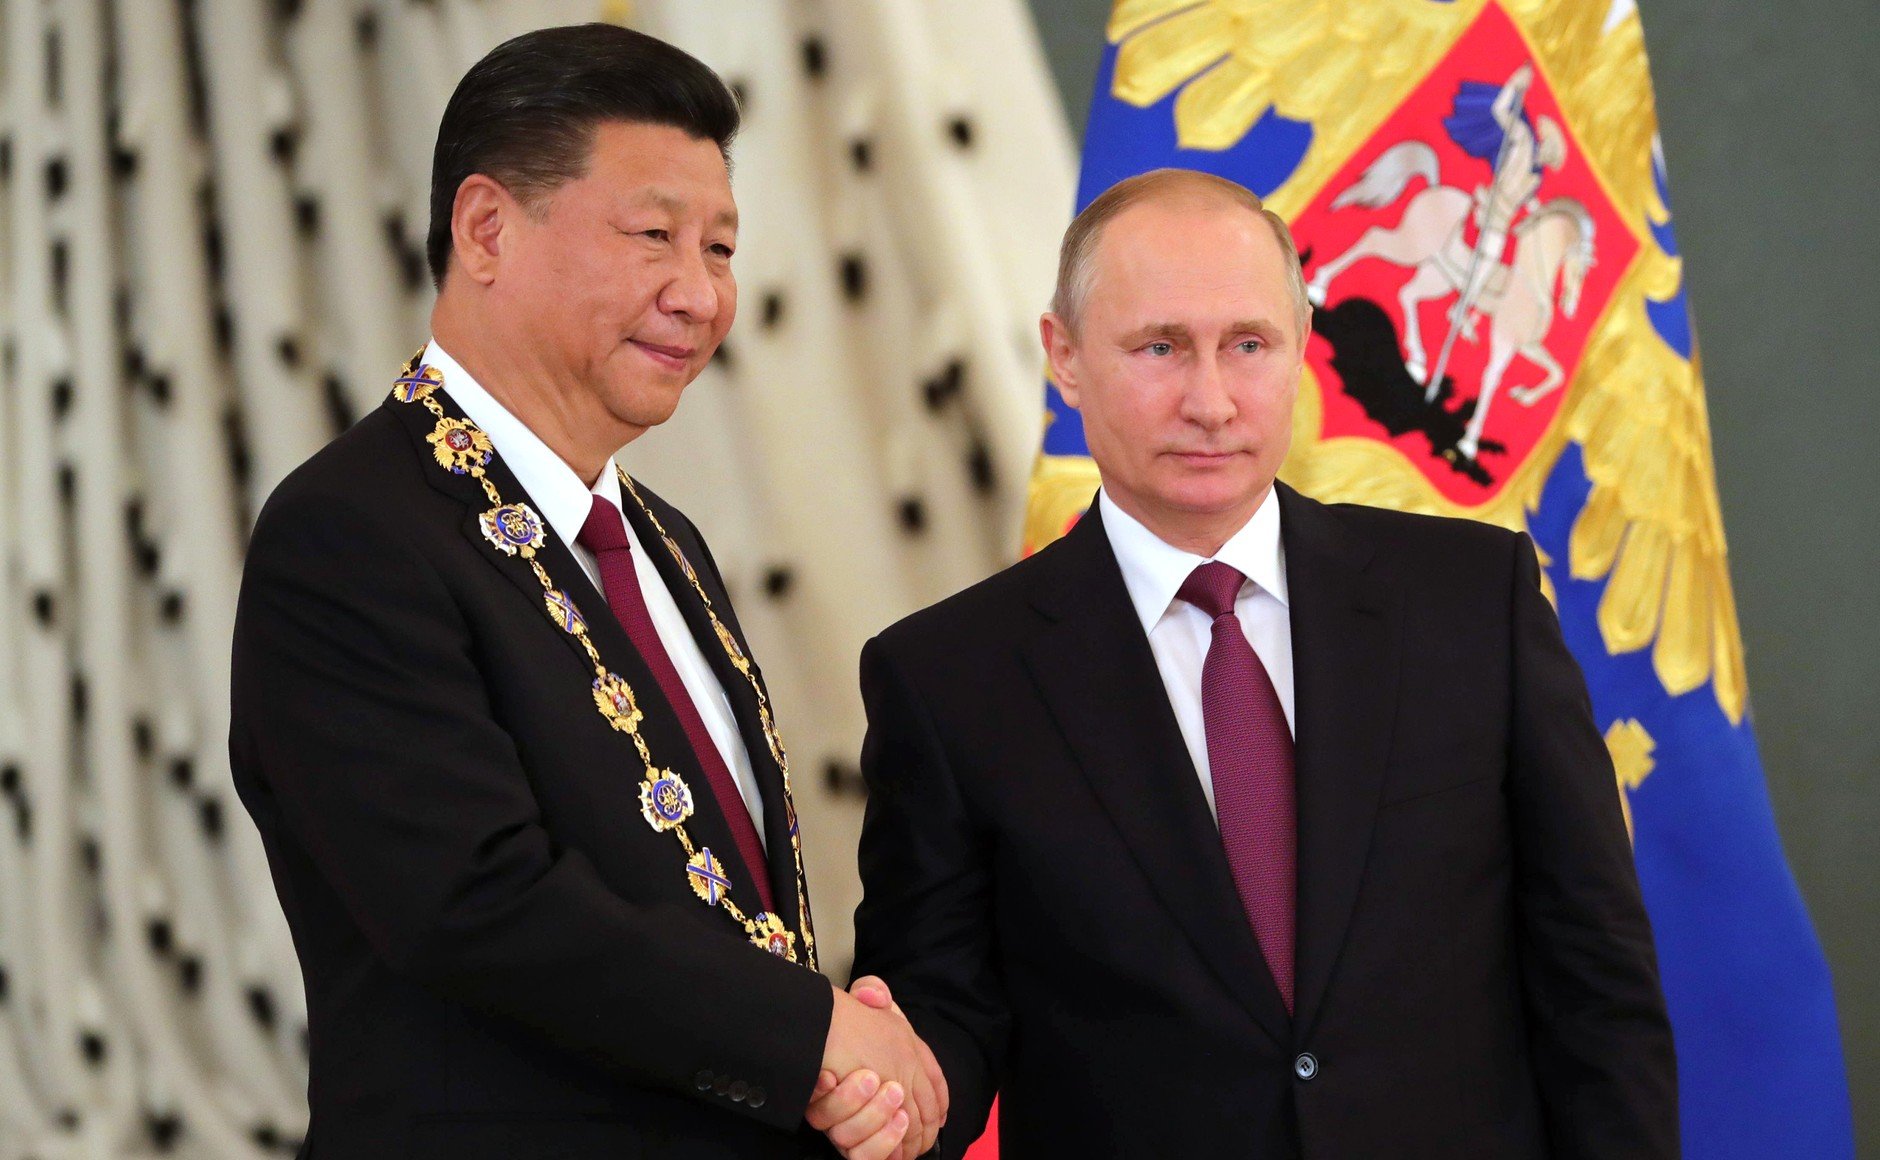 In un'immagine d'archivio, il Presidente russo, Vladimir Putin, e quello cinese Xi Jinping al Kremlin.In un'immagine d'archivio, il Presidente russo, Vladimir Putin, e quello cinese Xi Jinping al Kremlin.